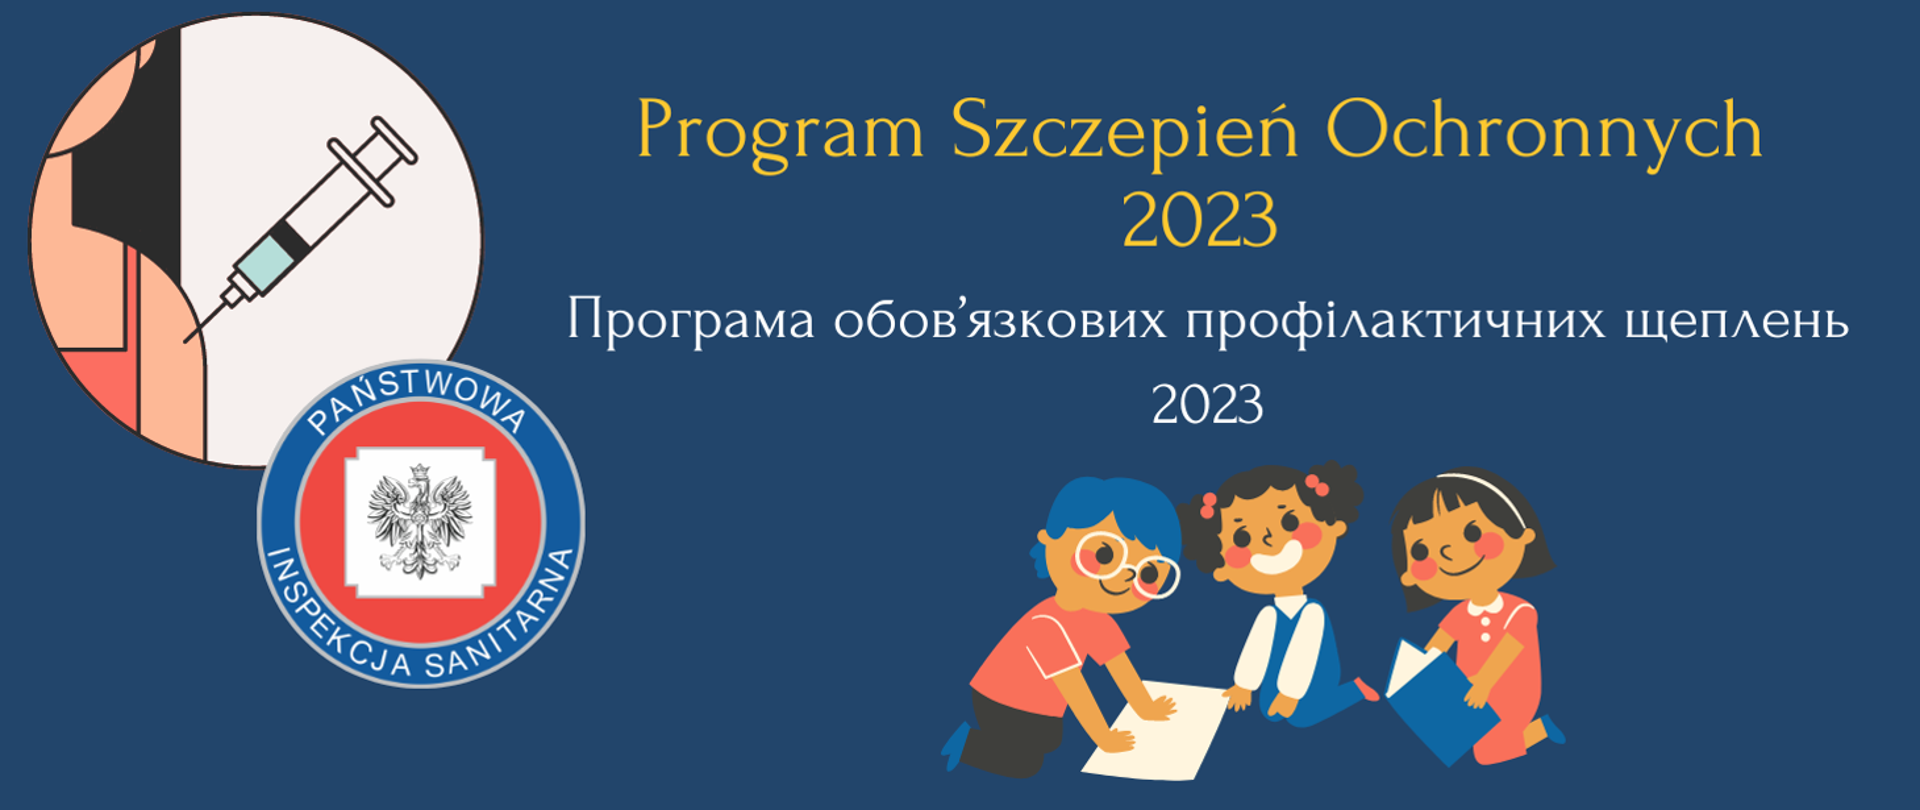 Program Szczepień Ochronnych 2023